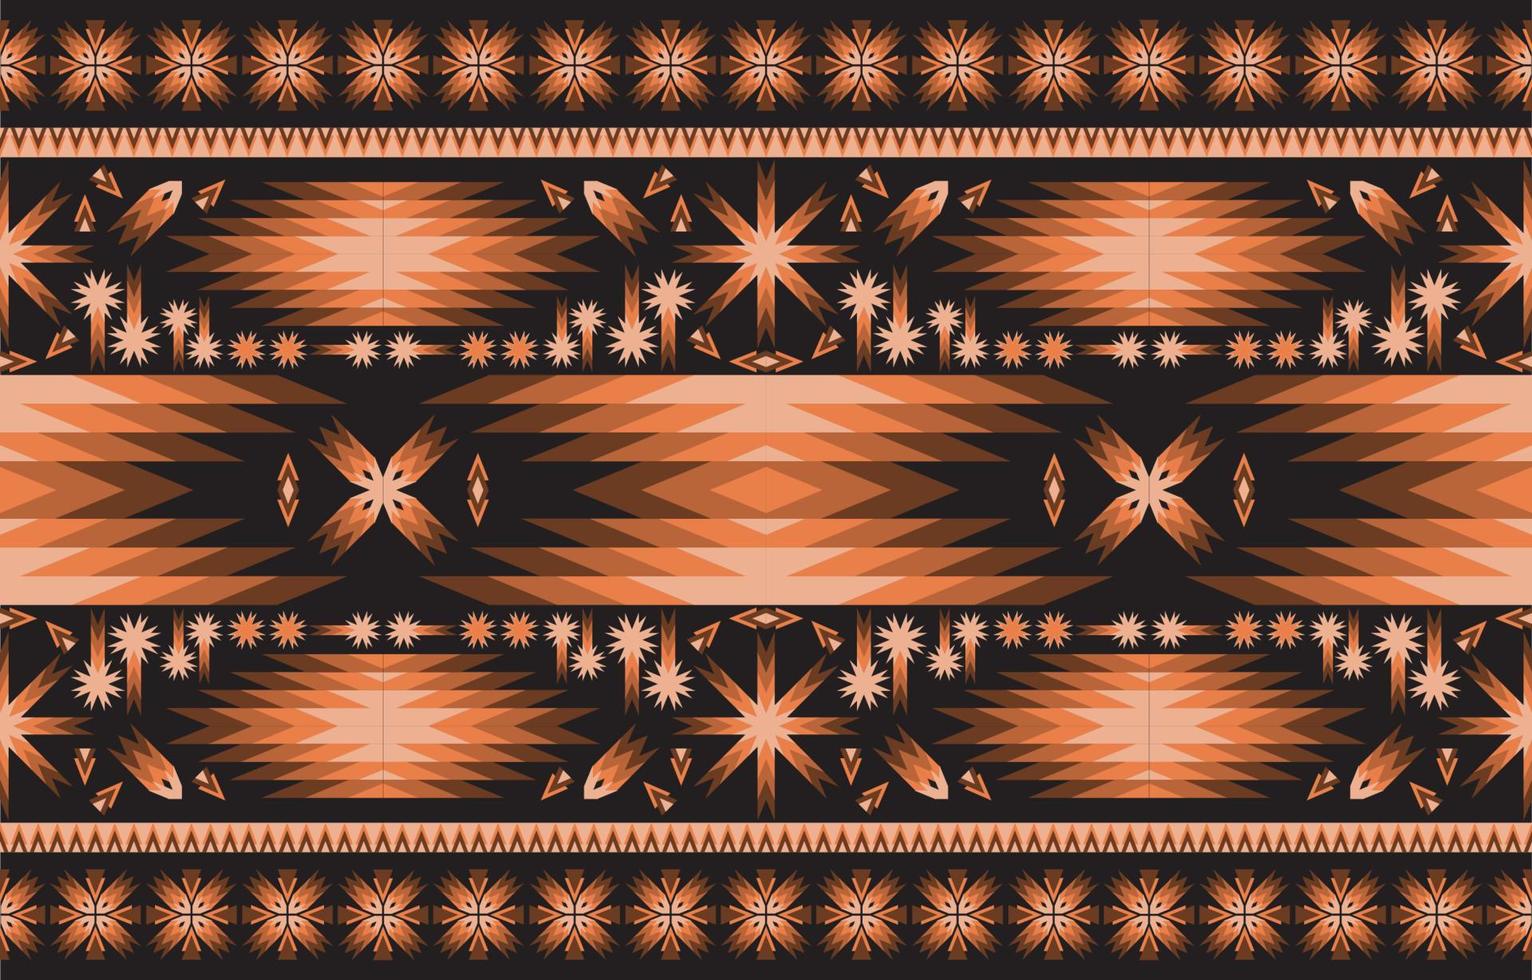 fondo vectorial tribal étnico con elementos folclóricos decorativos. impresión de arte de patrón geométrico abstracto azteca. diseño para alfombra, tapis, manta, papel tapiz, diseño de tela, tejido, textil, moqueta, bordado. vector